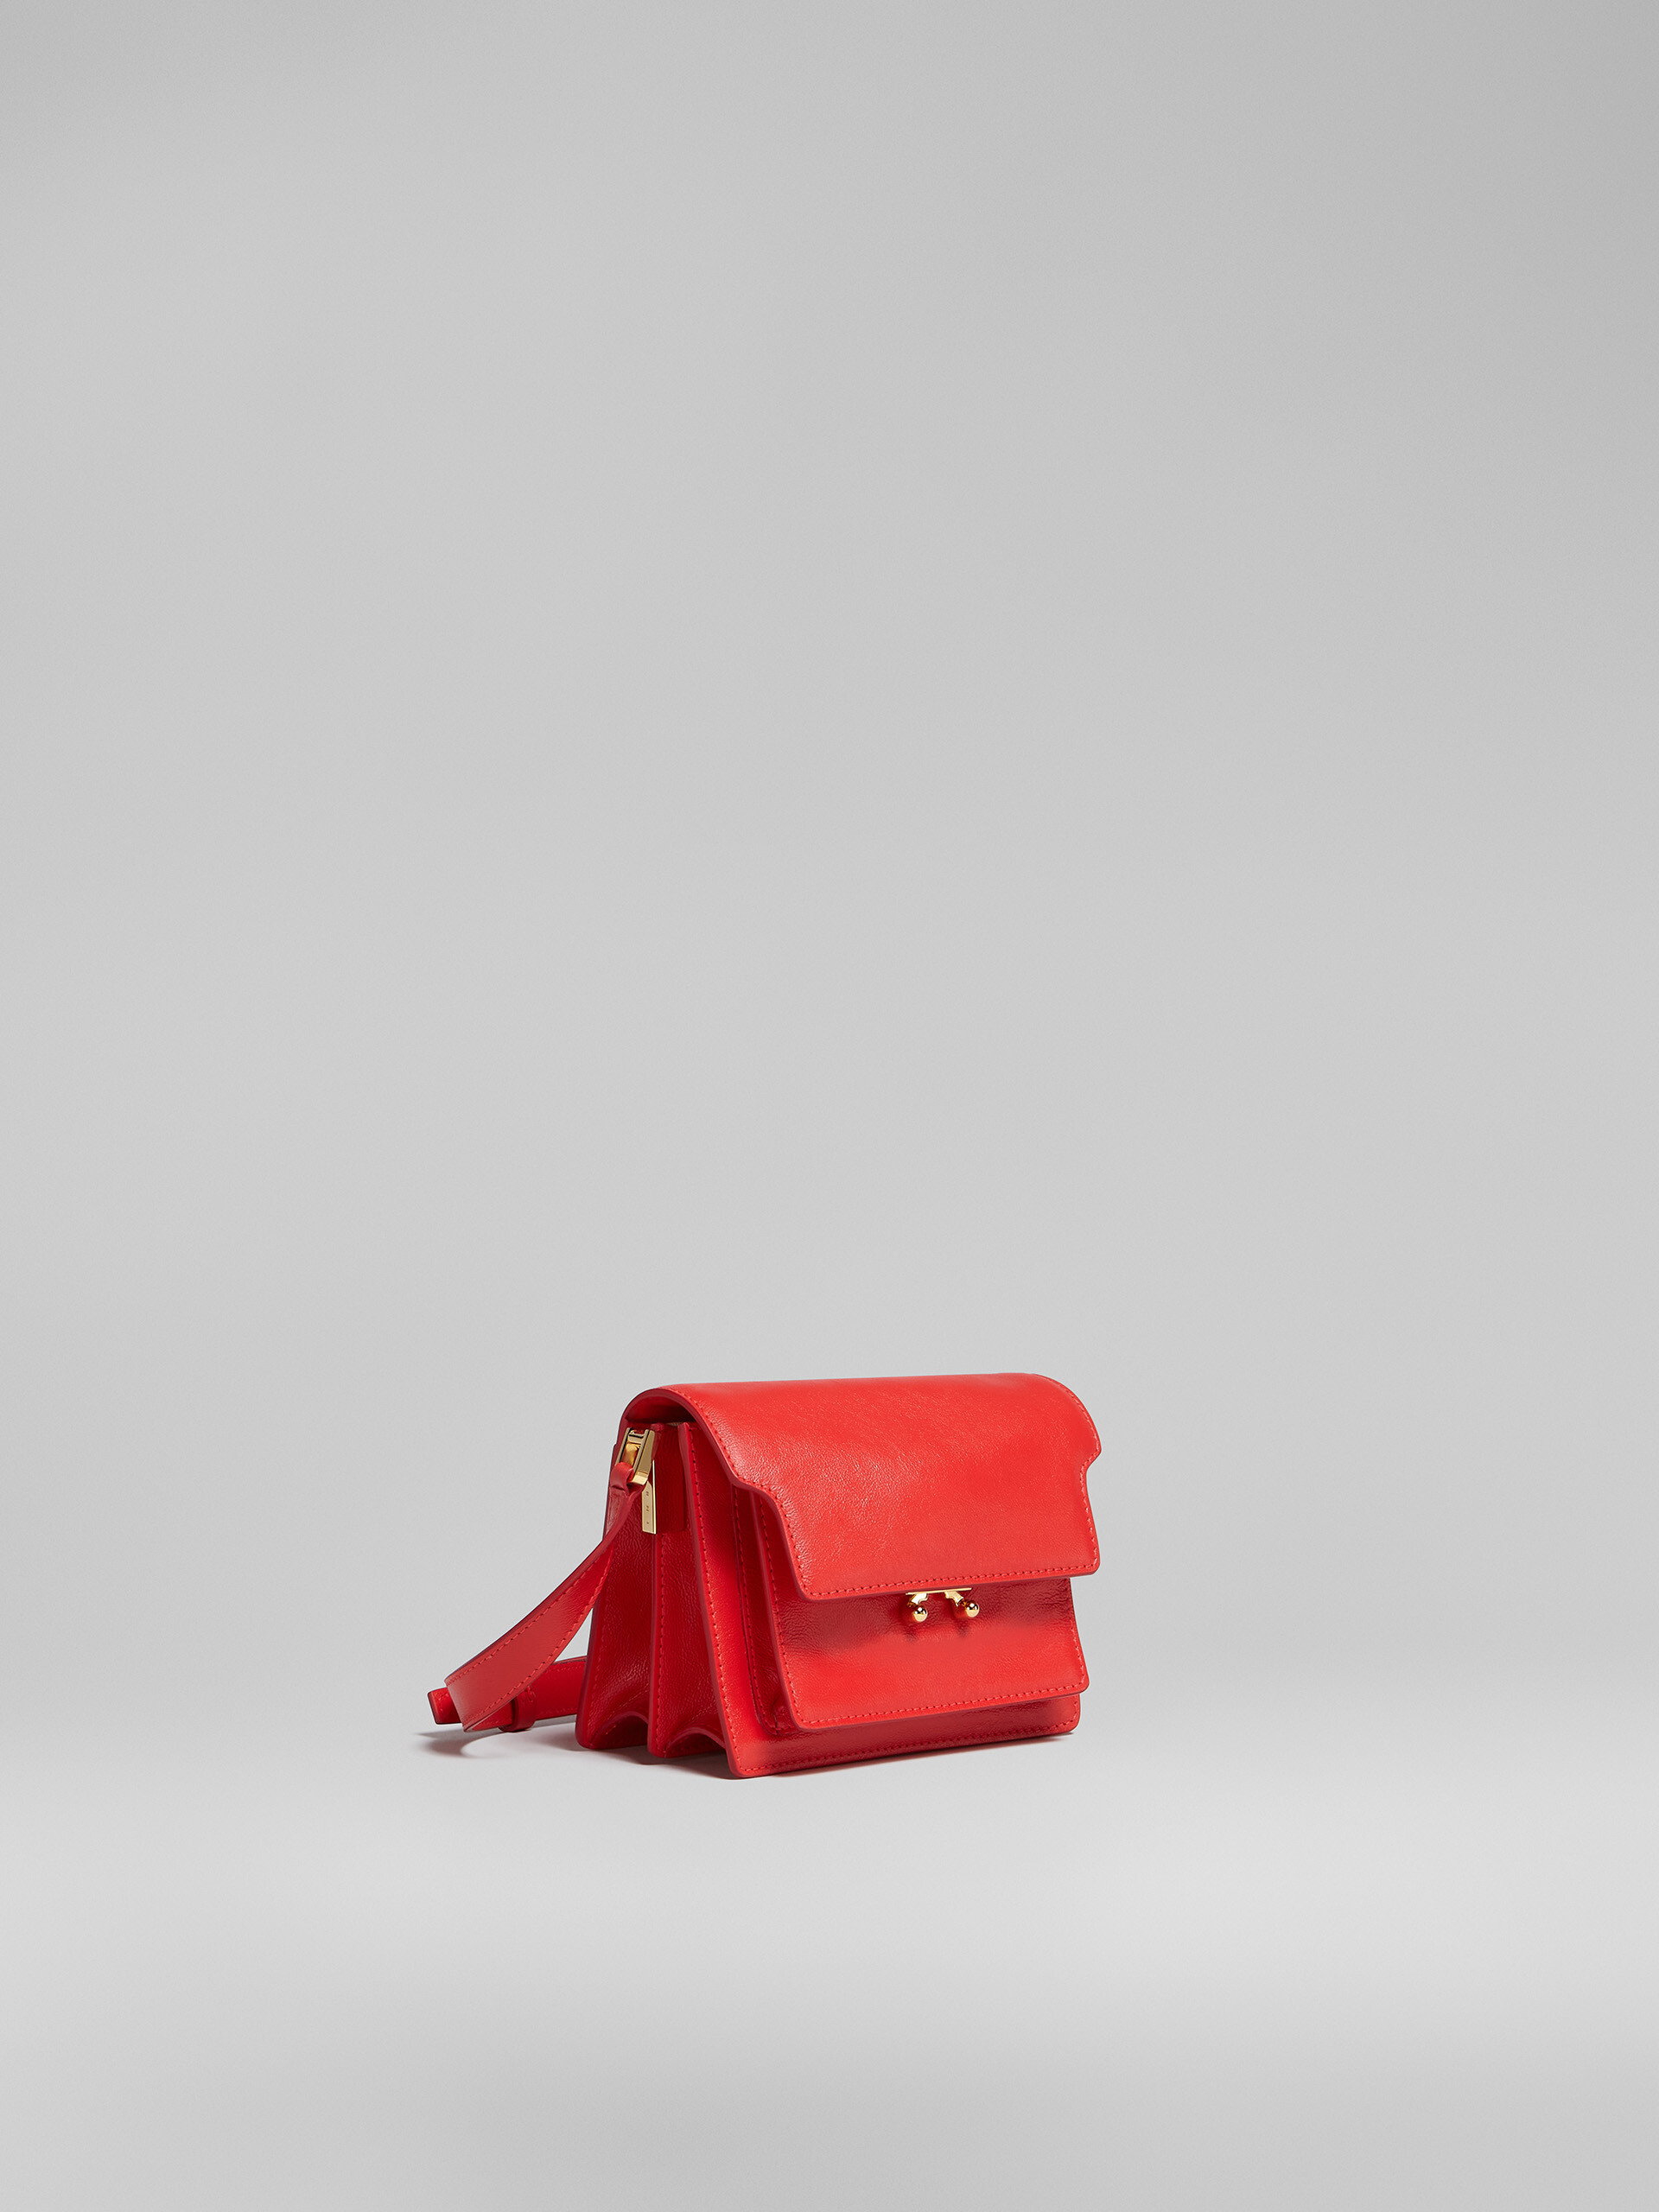 TRUNK SOFT bag mini in pelle rossa - Borse a spalla - Image 6